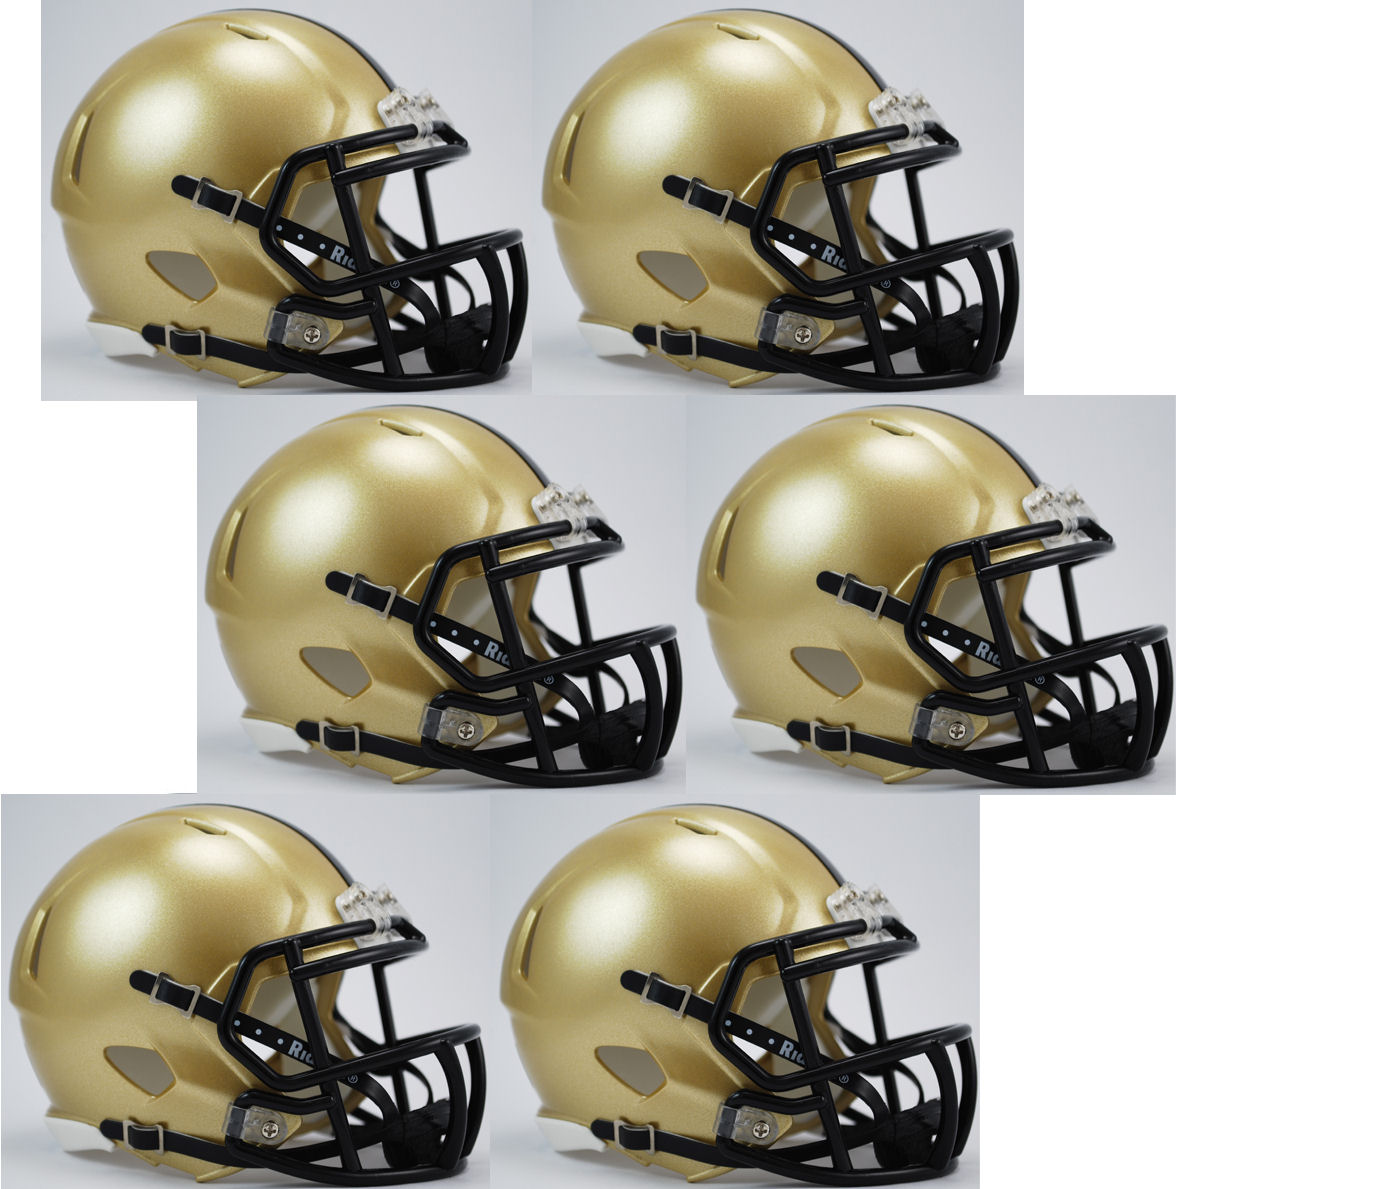 Boston College Eagles NCAA Mini Speed Football Helmet 6 count